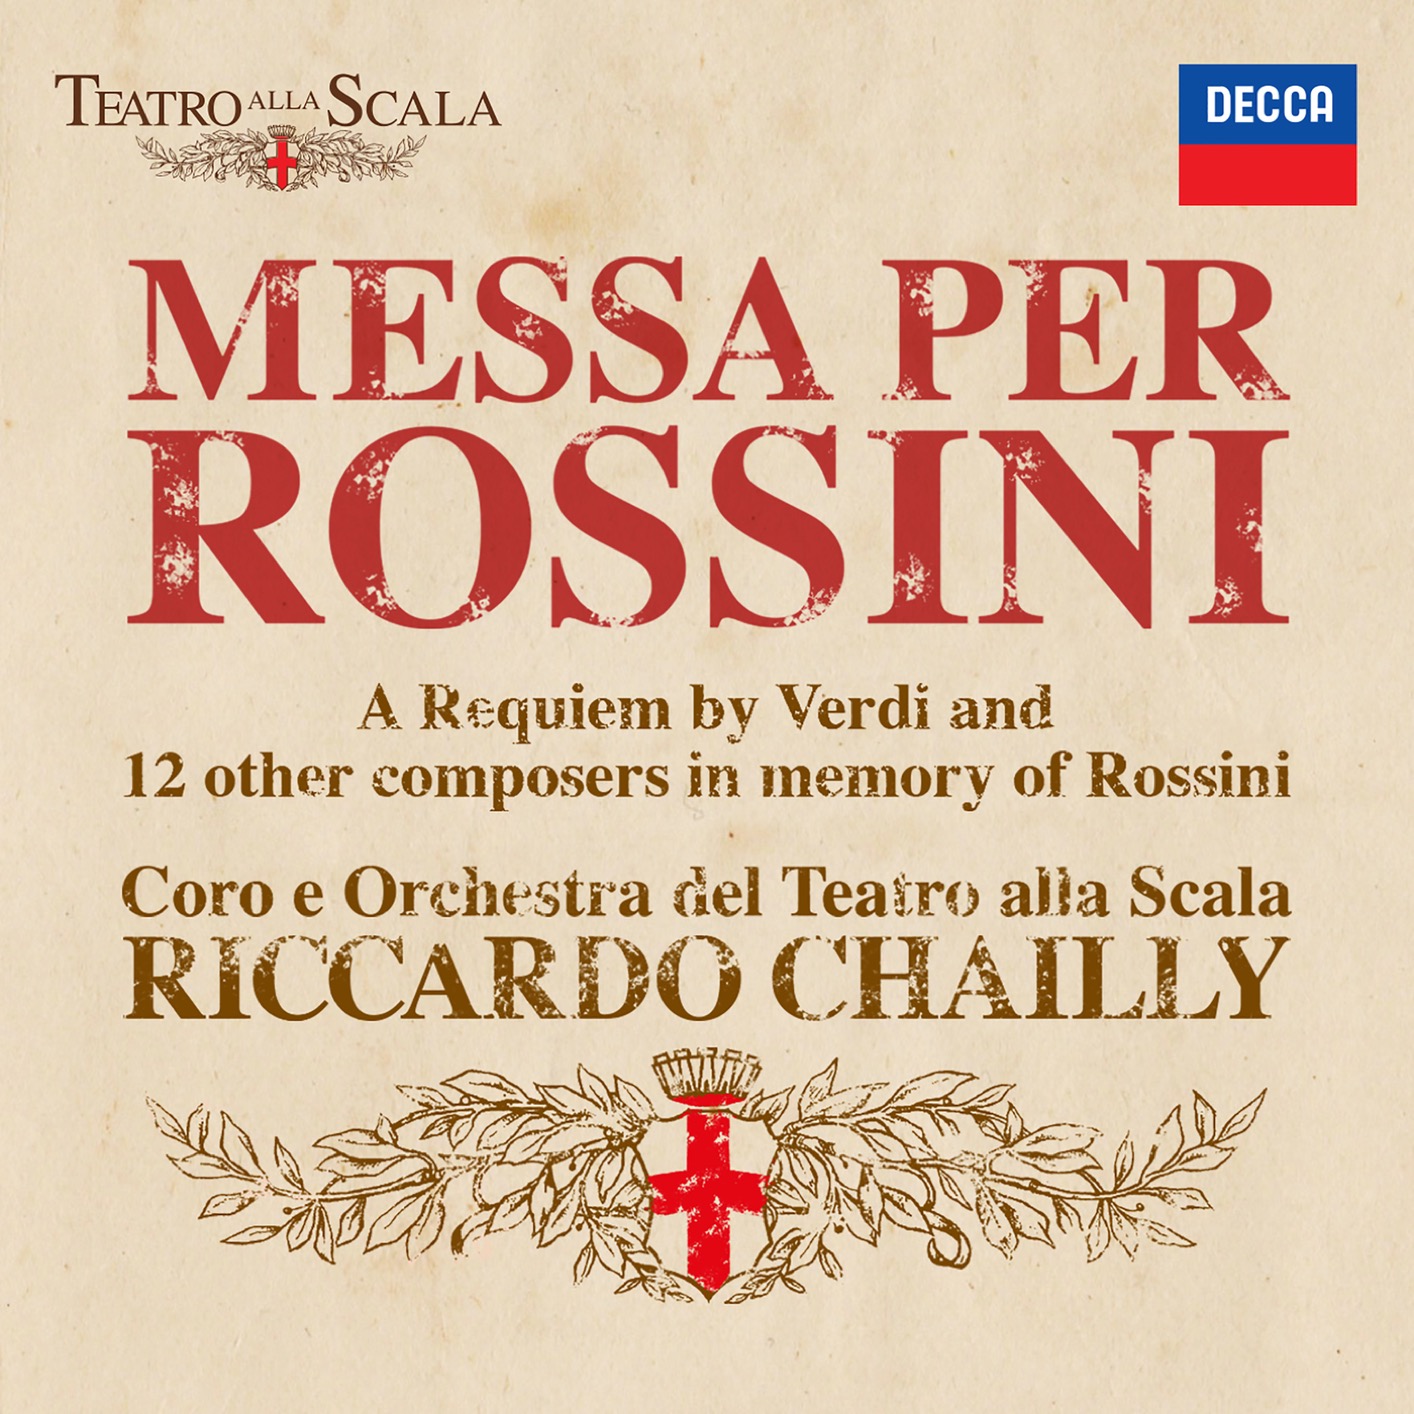 Coro e Orchestra del Teatro alla Scala & Riccardo Chailly - Messa per Rossini (2018) [FLAC 24bit/48kHz]